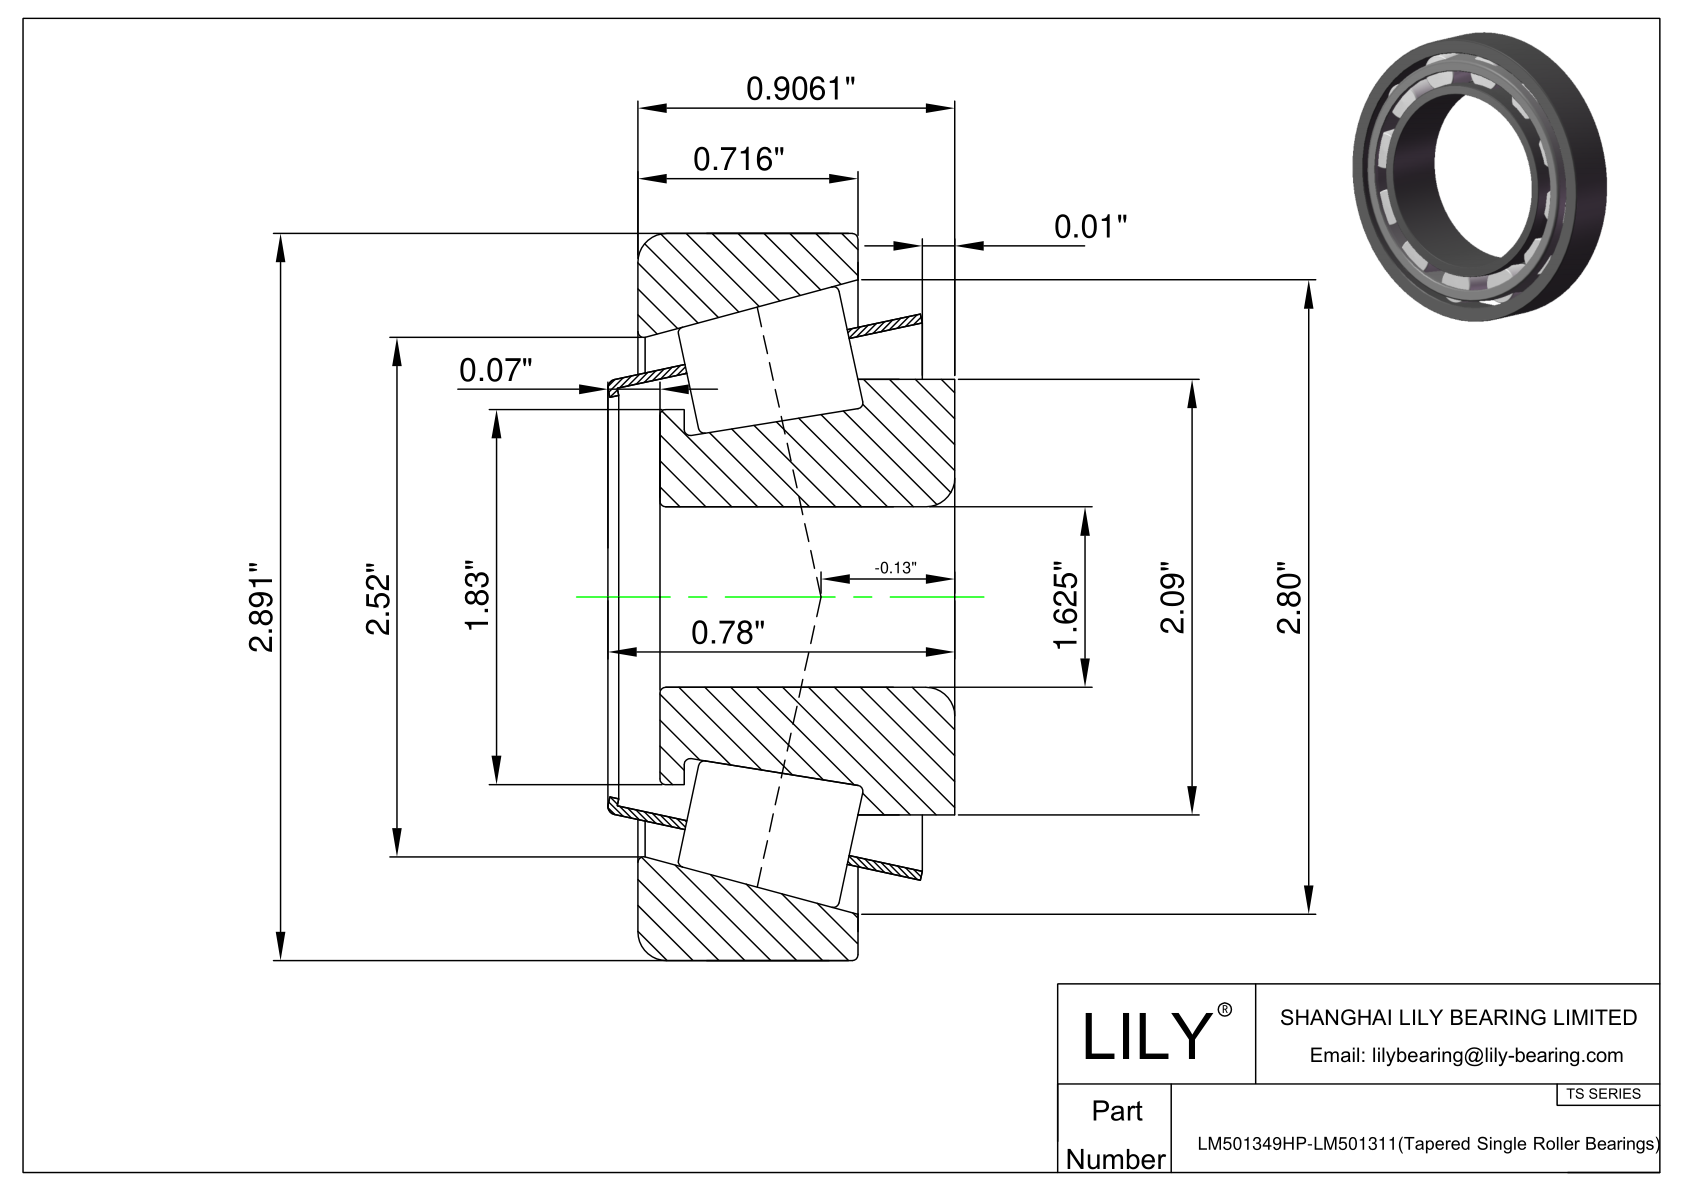 LM501349HP-LM501311 TS系列(圆锥单滚子轴承)(英制) CAD图形